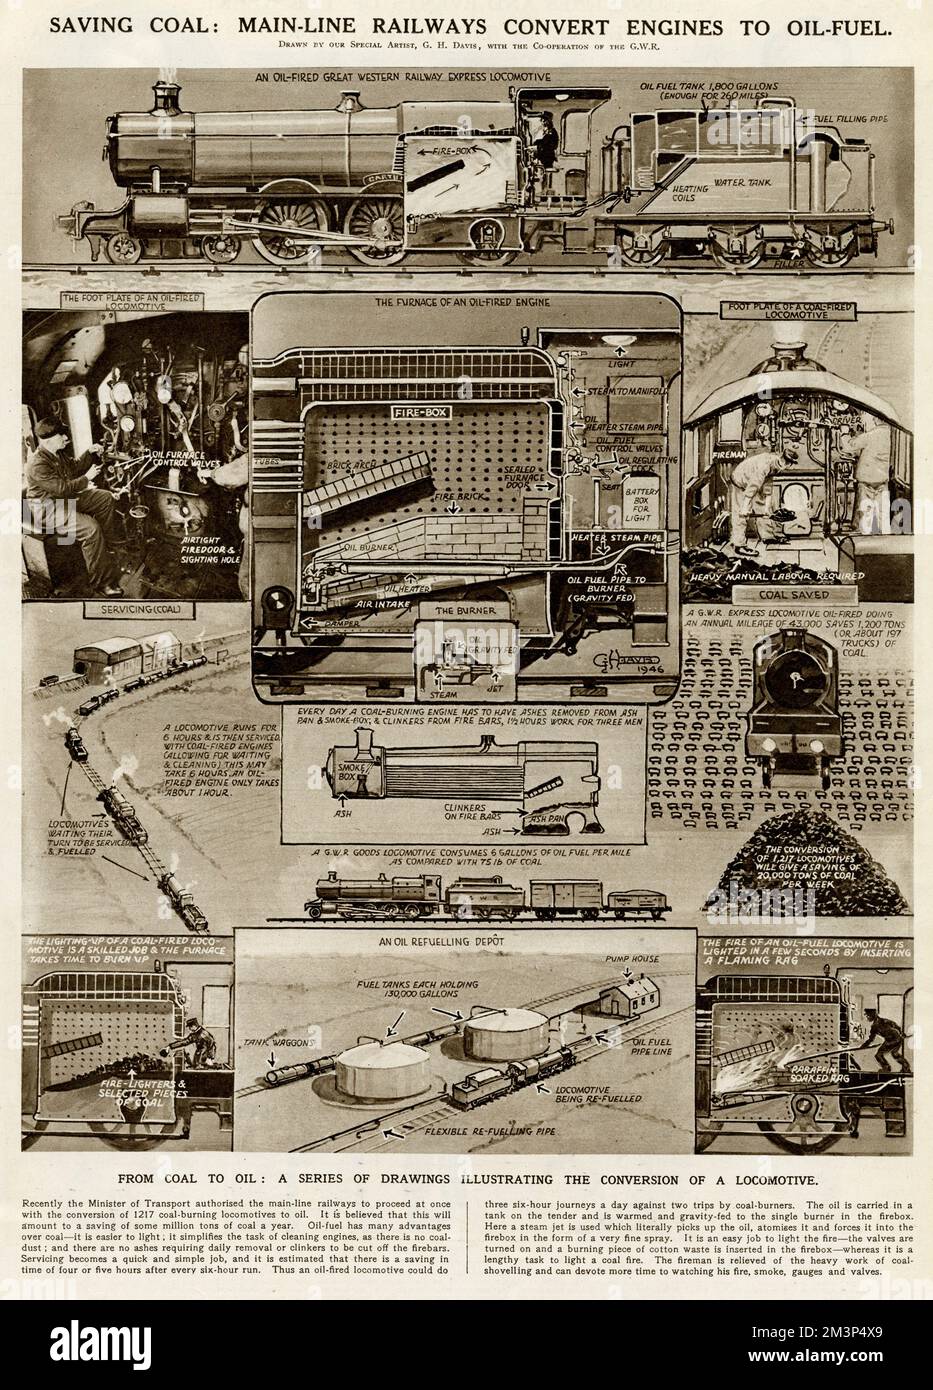 Kohleeinsparung: Die Hauptstrecken-Eisenbahnen wandeln Motoren in Ölbrennstoff um. Eine Reihe von Zeichnungen, die den Umbau einer Lokomotive veranschaulichen. Datum: 1946 Stockfoto